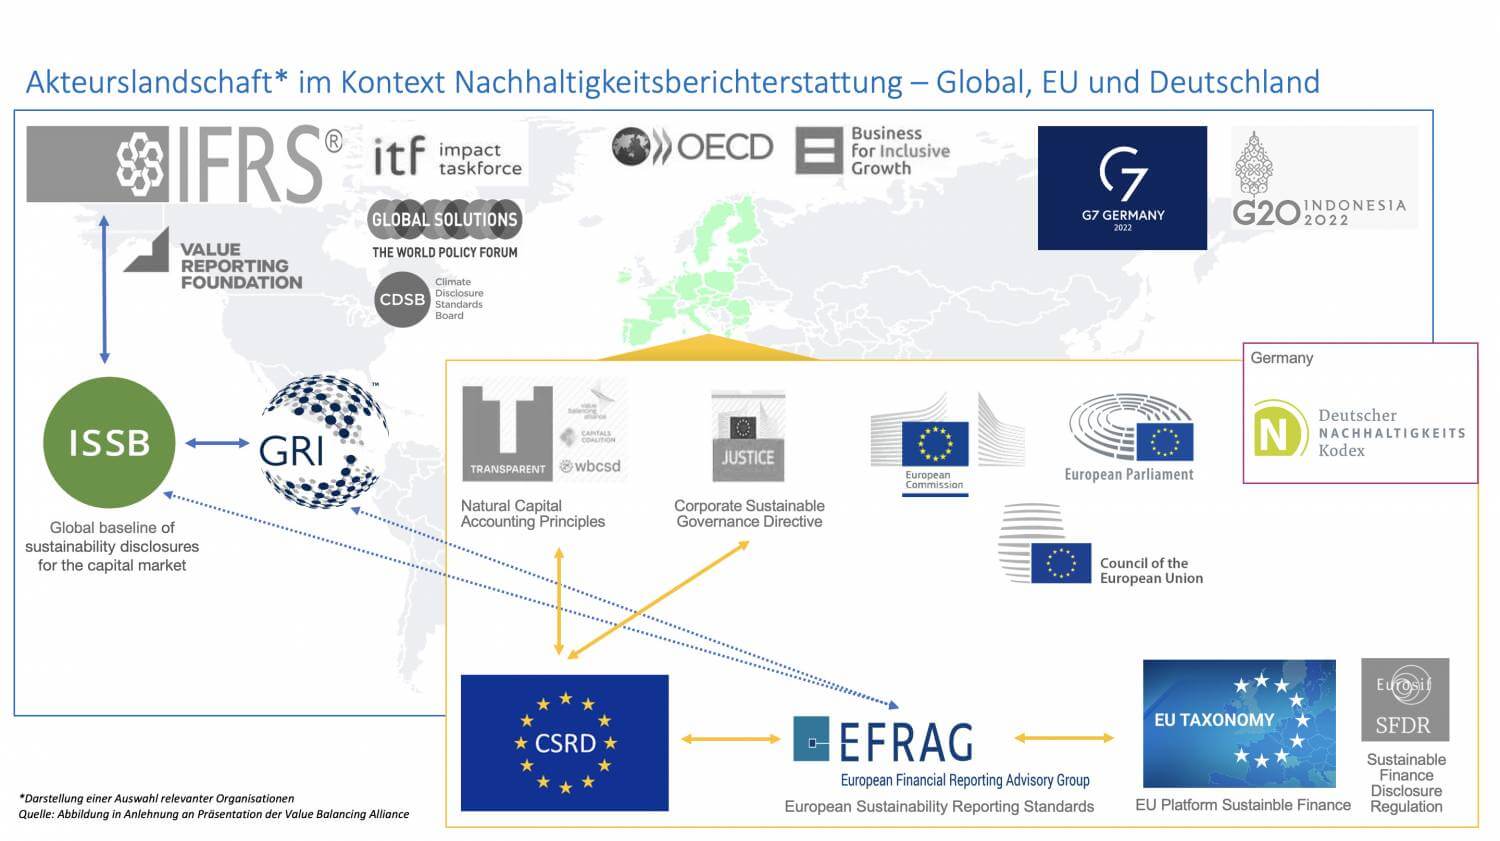 Grafik: Akteurslandschaft im Kontext Nachhaltigkeitsberichterstattung - Global, EU und Deutschland